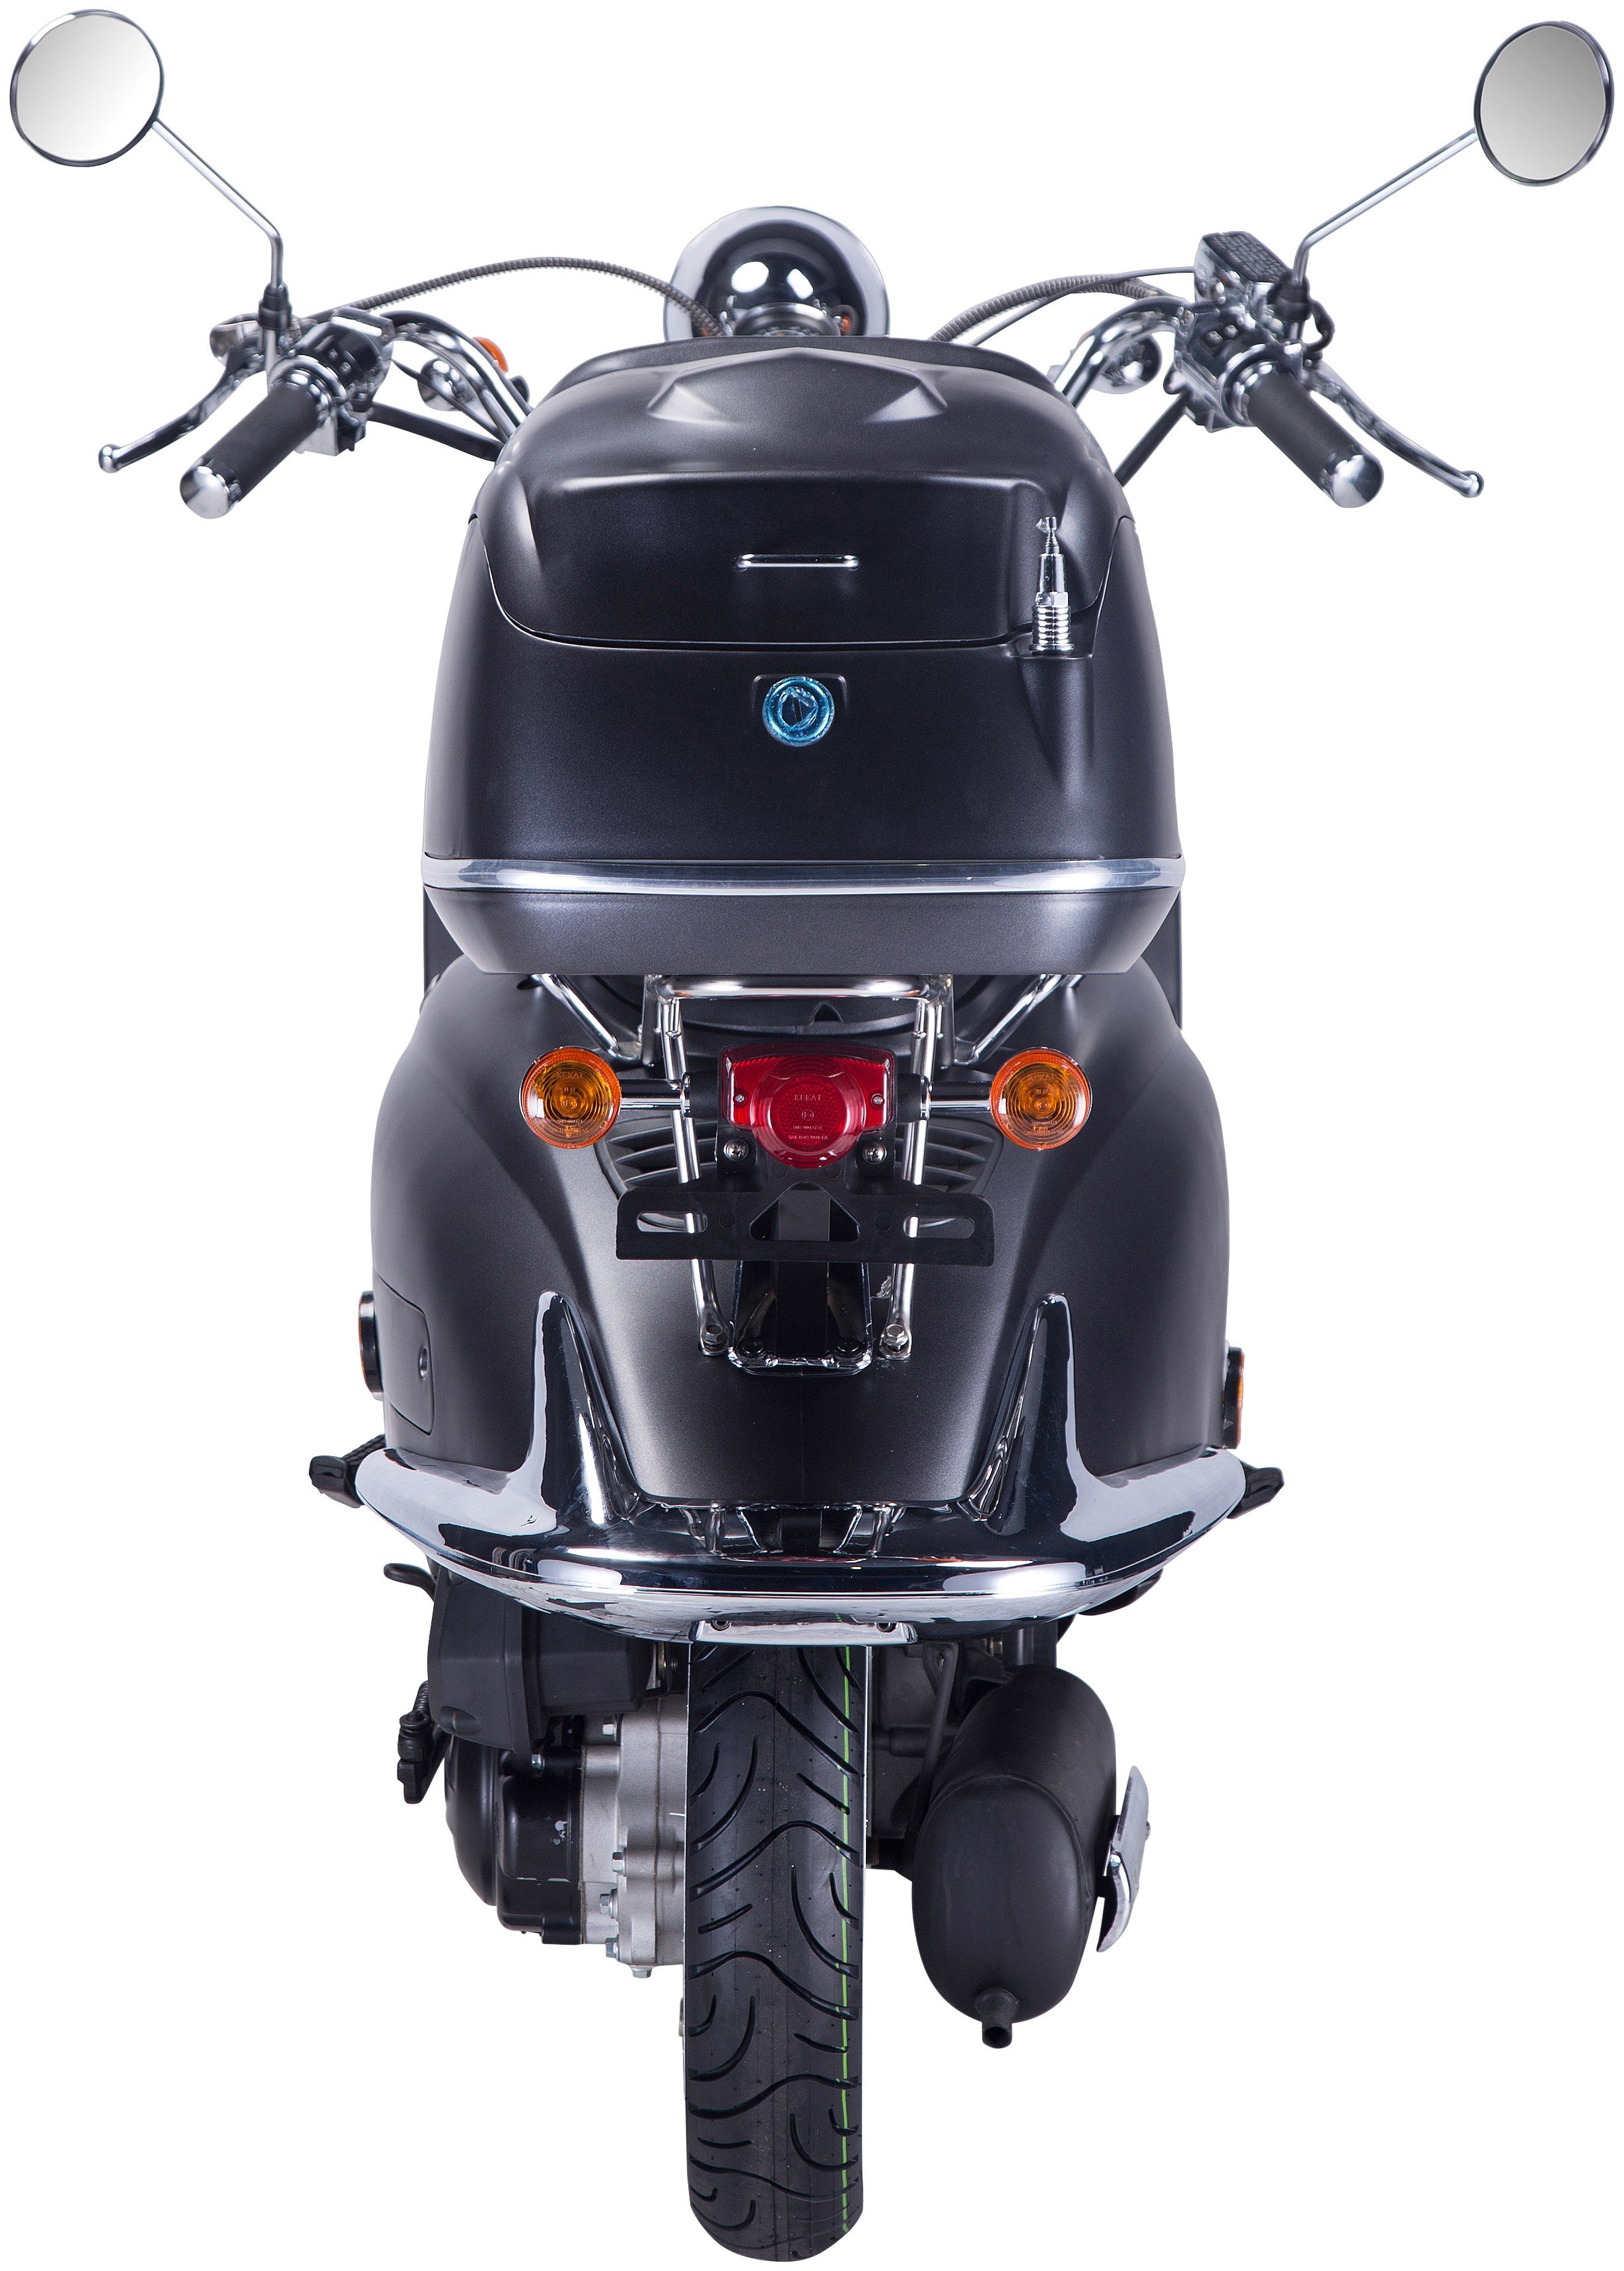 GT UNION Motorroller ccm, 85 Euro 125 5, schwarz/silberfarben km/h, (Set), Topcase Strada, mit